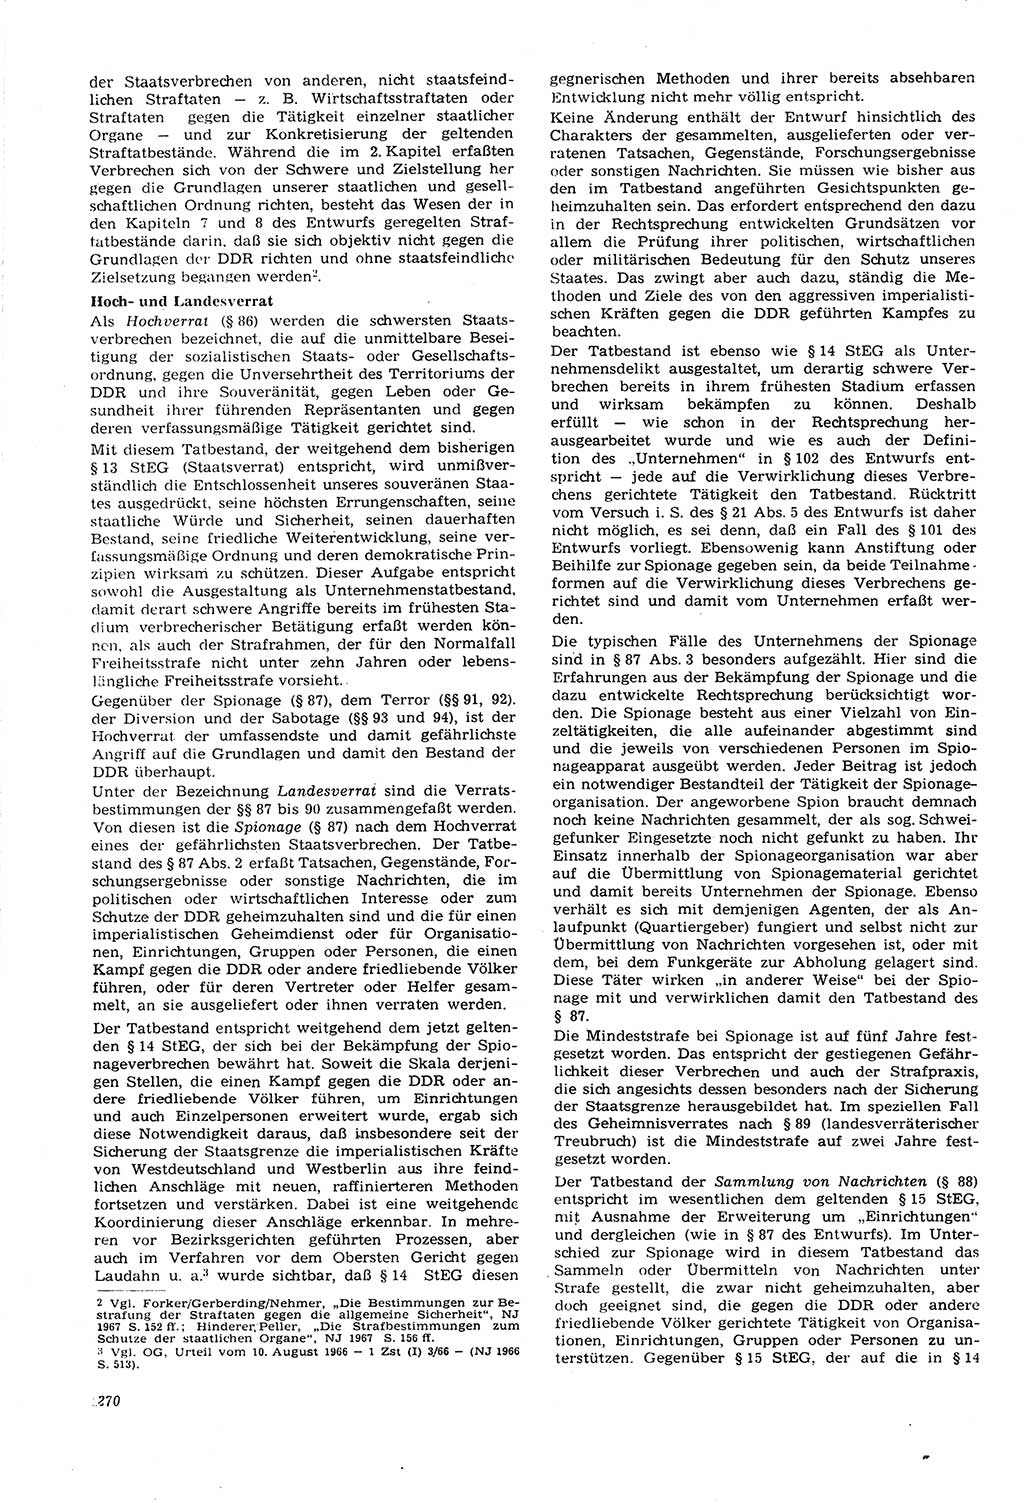 Neue Justiz (NJ), Zeitschrift für Recht und Rechtswissenschaft [Deutsche Demokratische Republik (DDR)], 21. Jahrgang 1967, Seite 270 (NJ DDR 1967, S. 270)